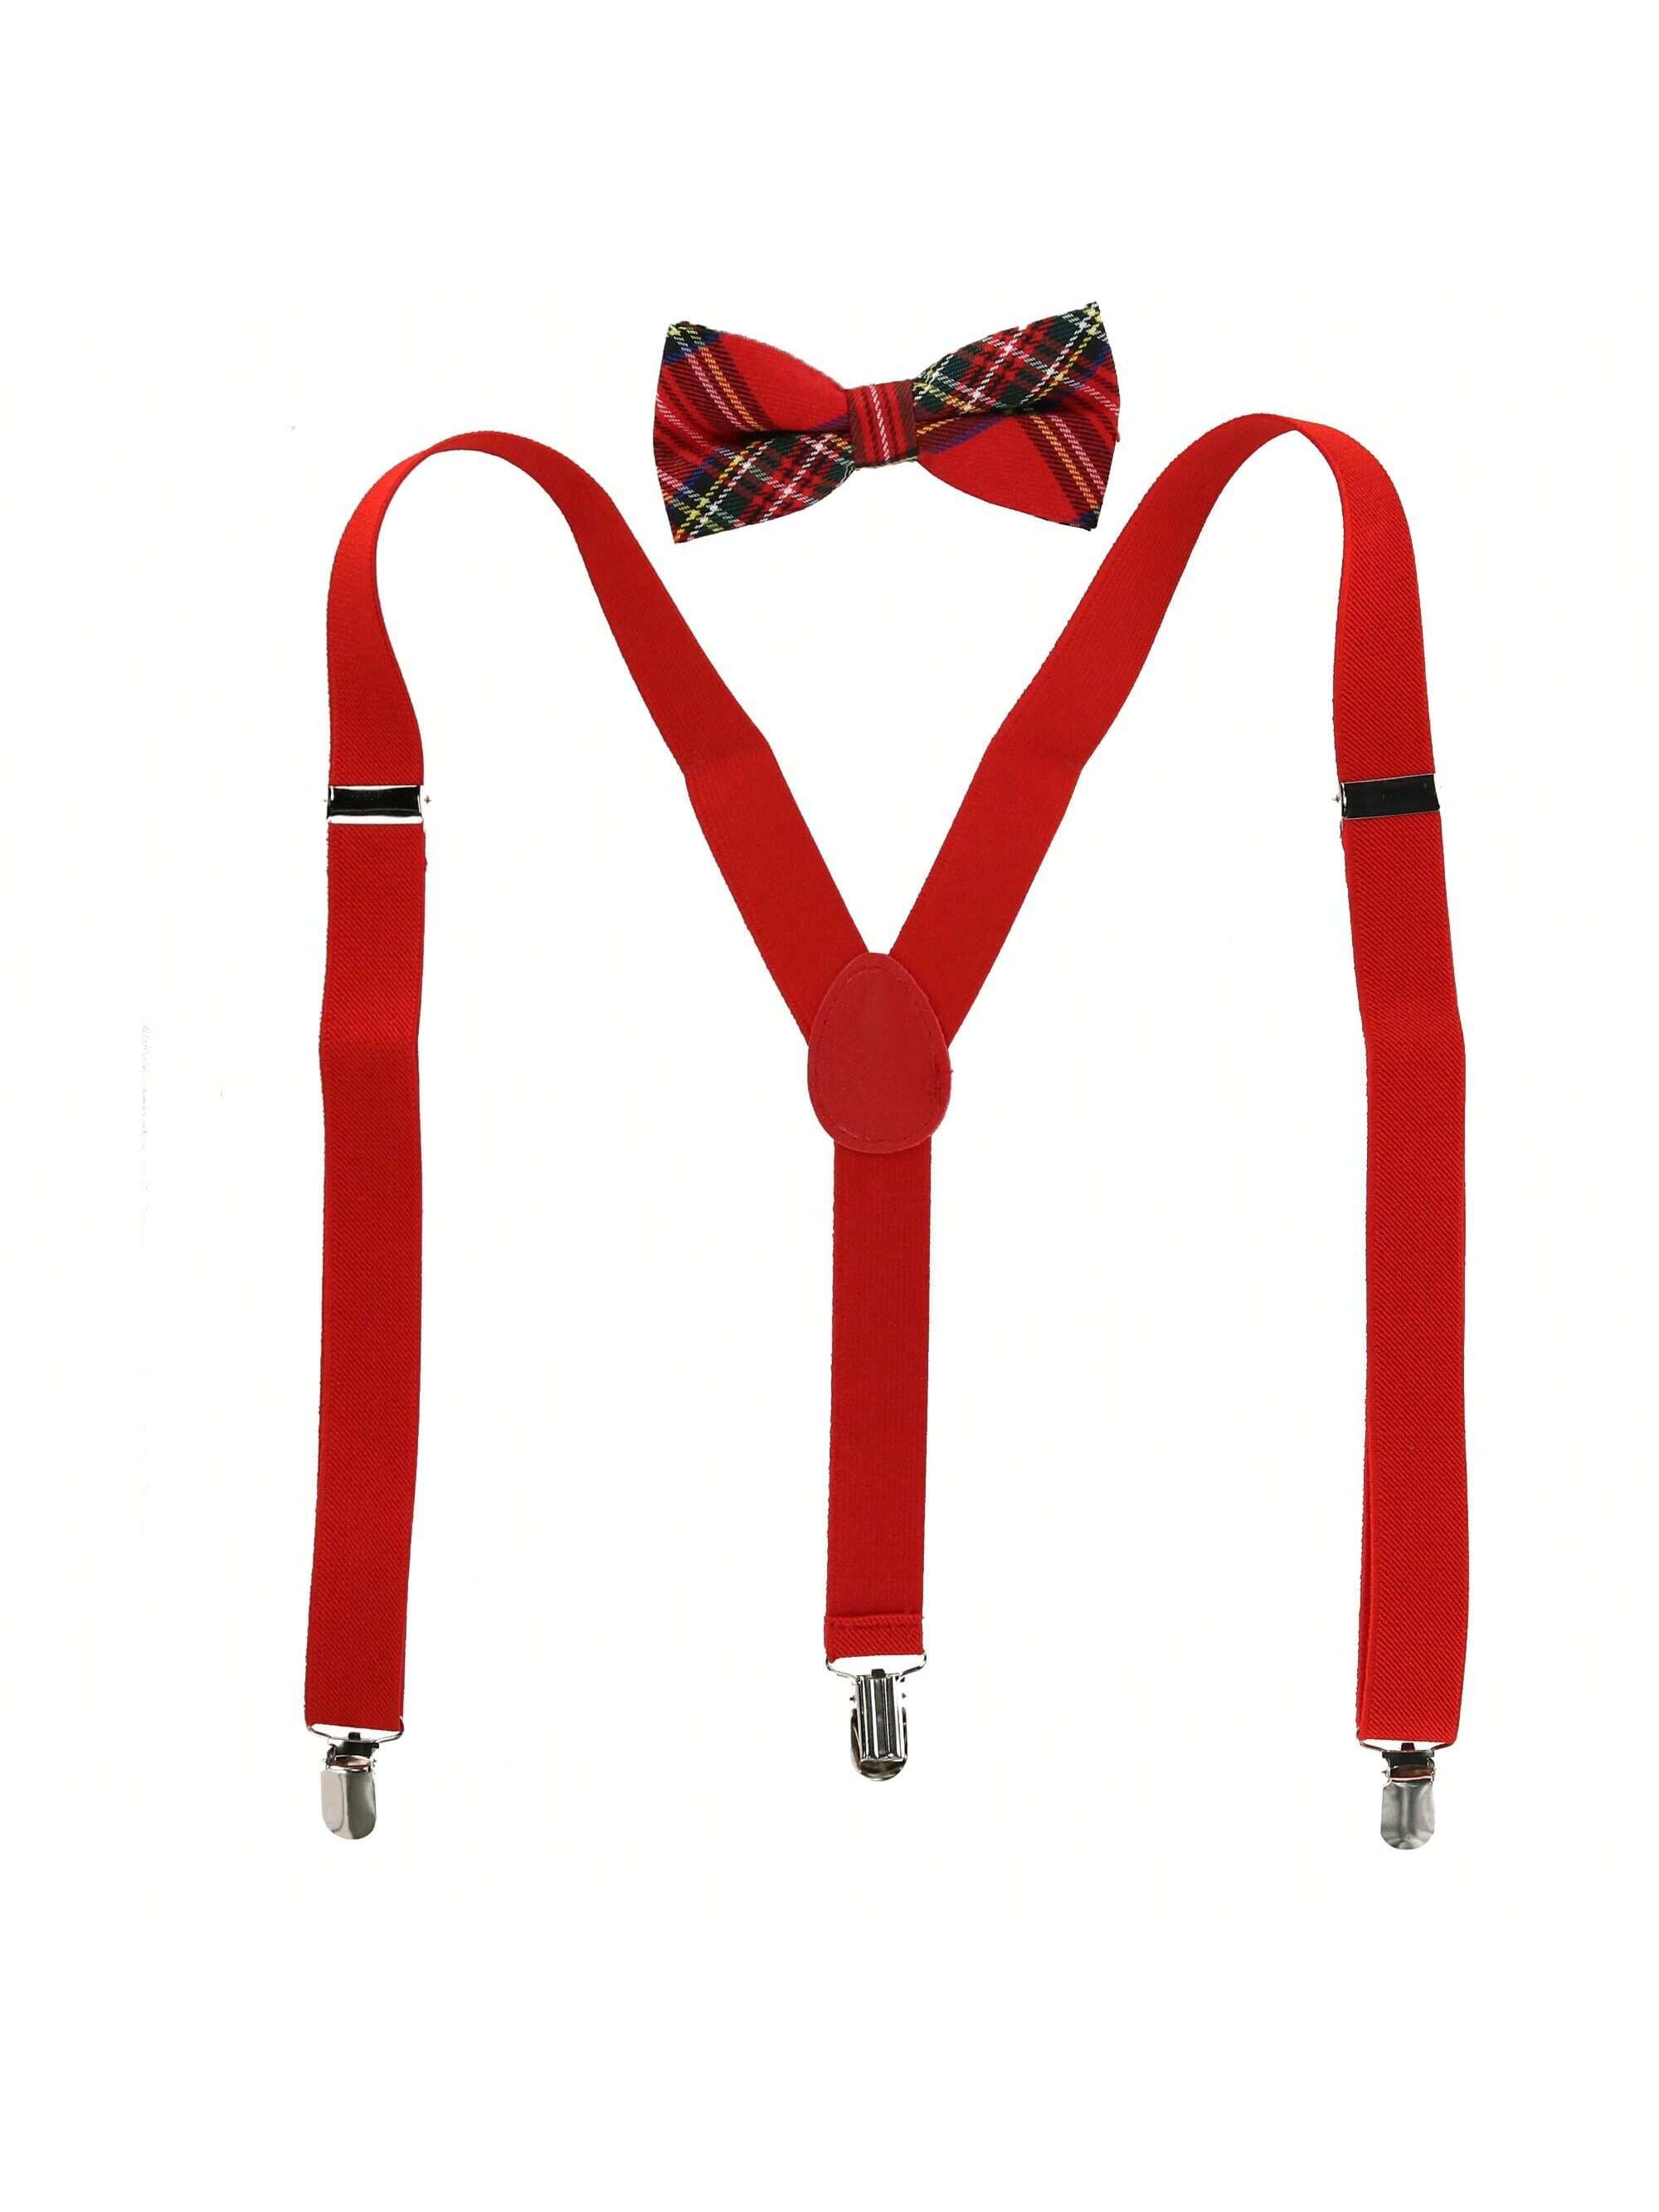 Мужской галстук-бабочка с клетчатым принтом и комплект однотонных подтяжек, красный галстук бабочка мужская бордовая в шотландскую клетку